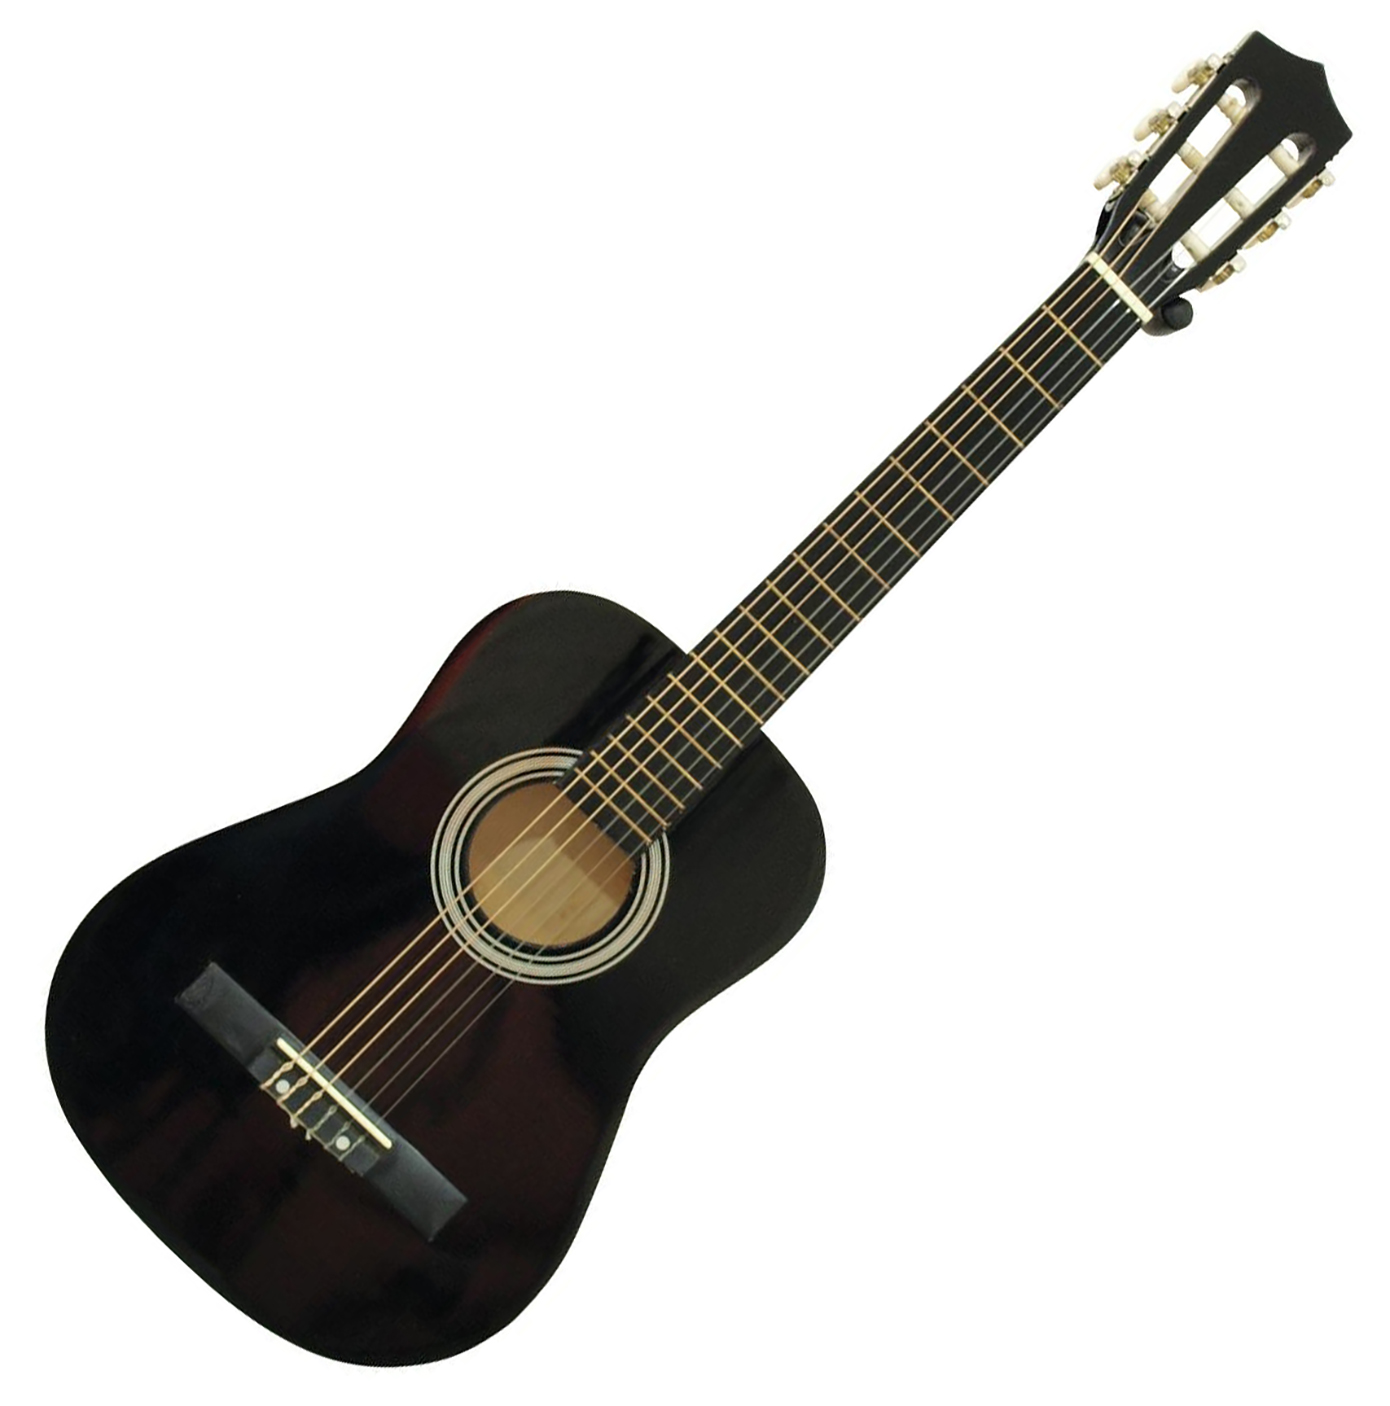 Se DiMavery AC-303 Klassisk Spansk Guitar 1/2 (Sort) hos SoundStoreXL.dk